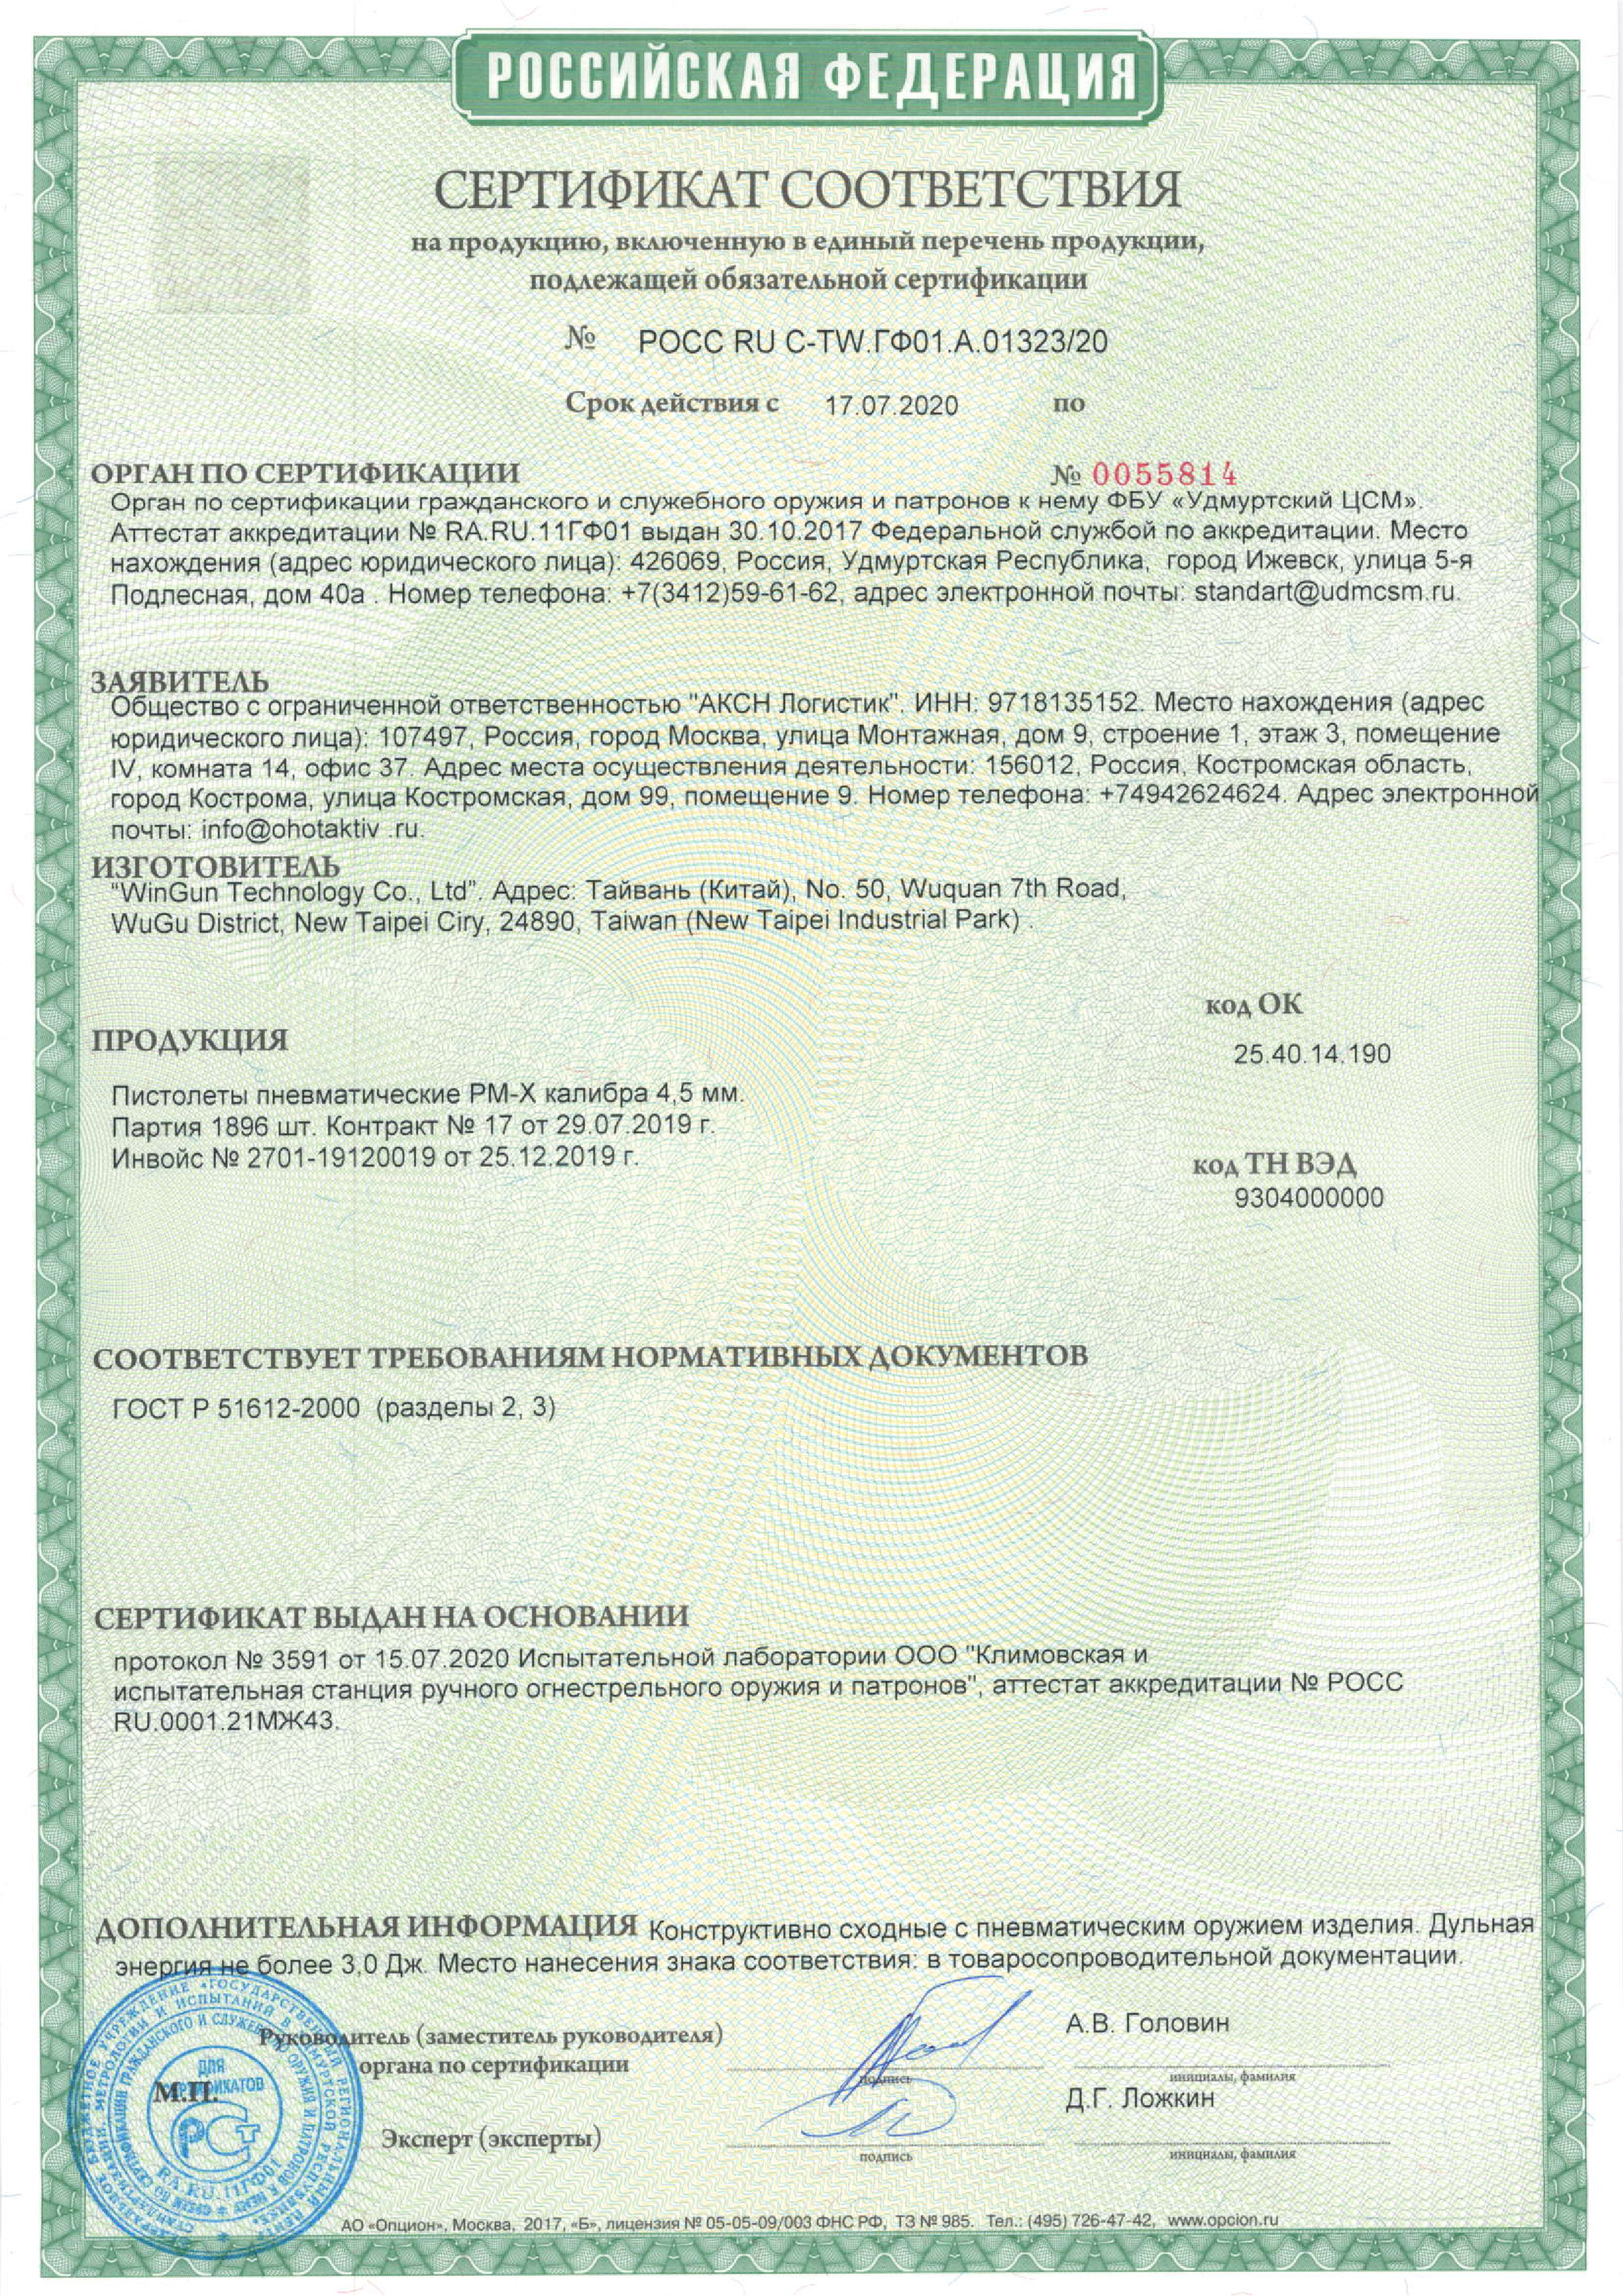 *Сертификат* Пневматический пистолет Borner PM-X (ПМ), калибр 4,5 мм Сертификат соответствия №РОСС RU C-TW.ГФ01.А.01323/20 (Borner PM-X) сертификат BORNER РМ-Х